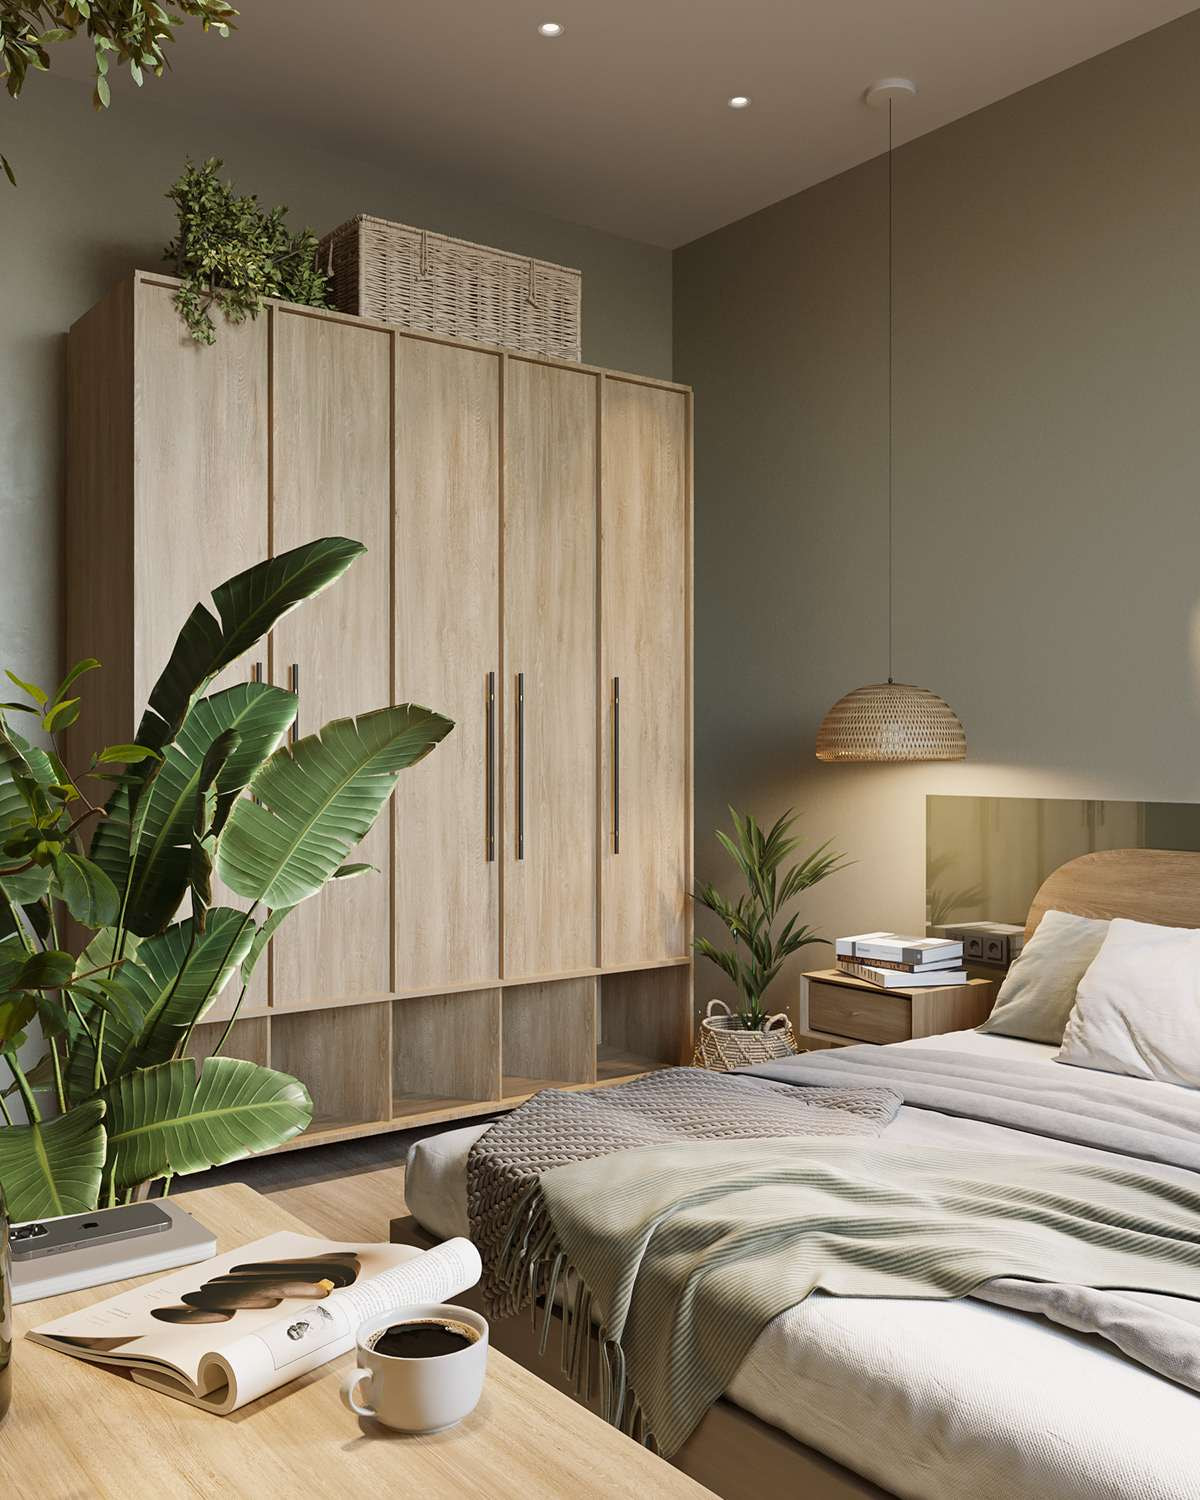 Thiết kế nội thất phòng ngủ theo phong cách Eco: xanh - sạch - mát 